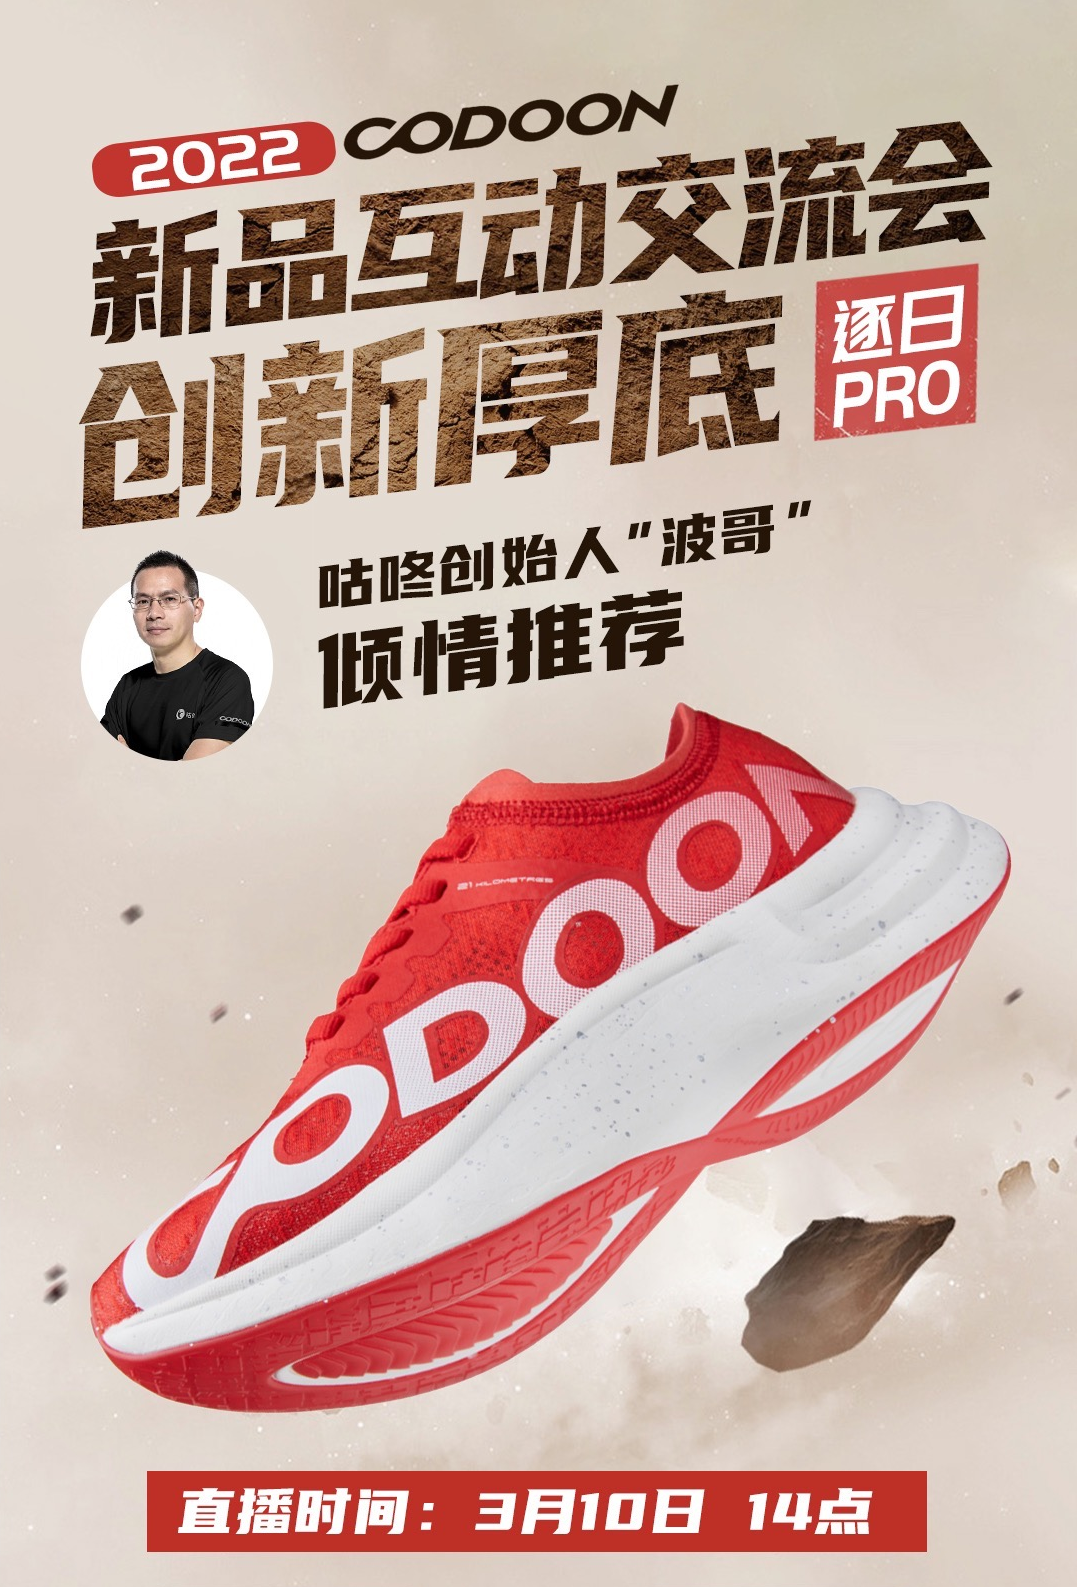 咕咚新品厚底跑鞋将于3月10日重磅发布